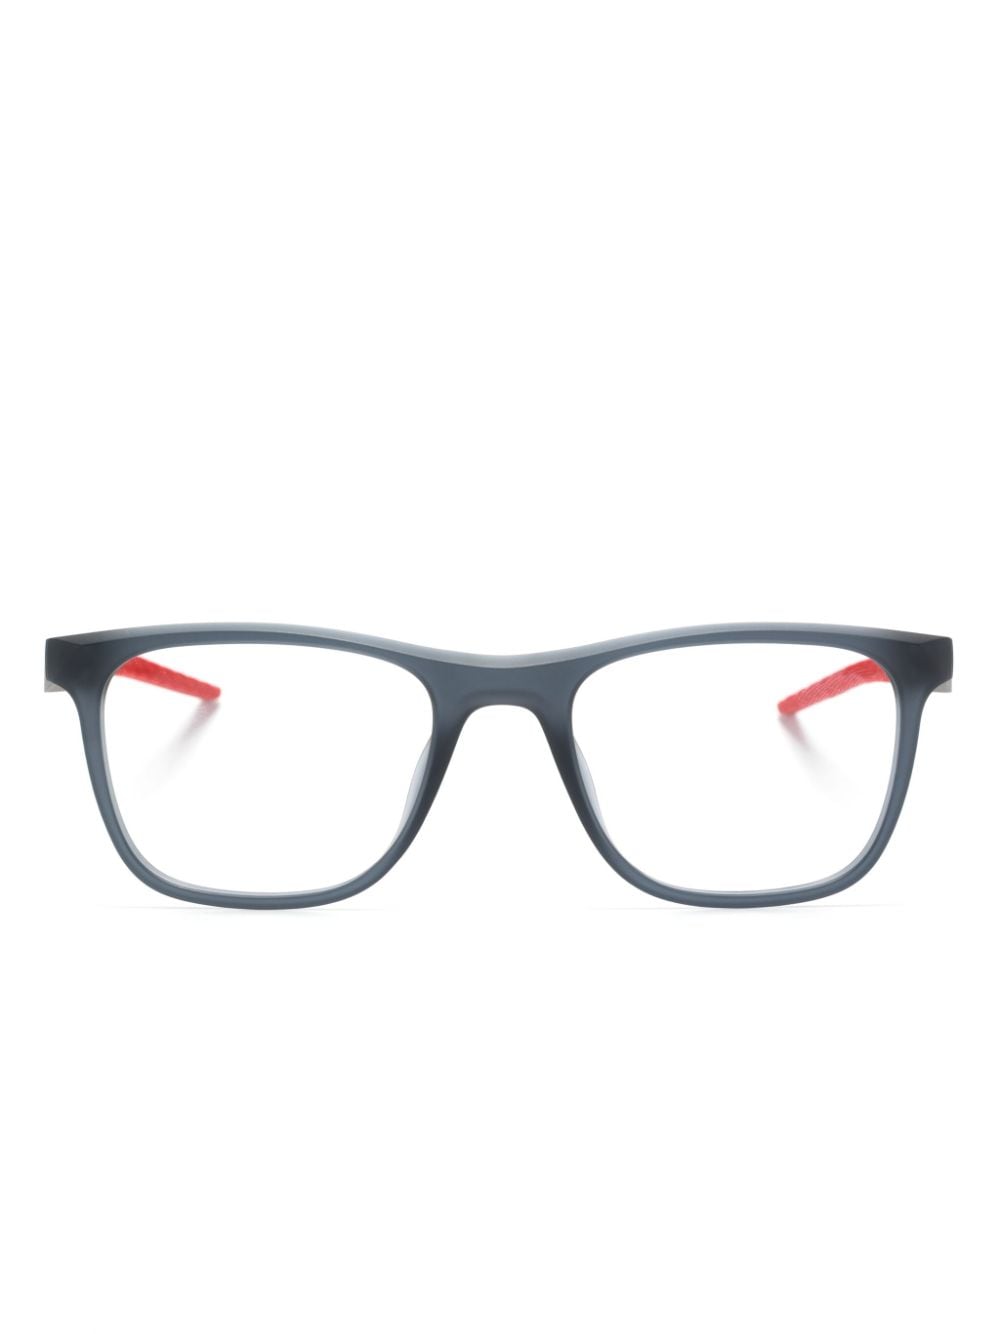 nike lunettes de vue rectangulaires 7056 - gris